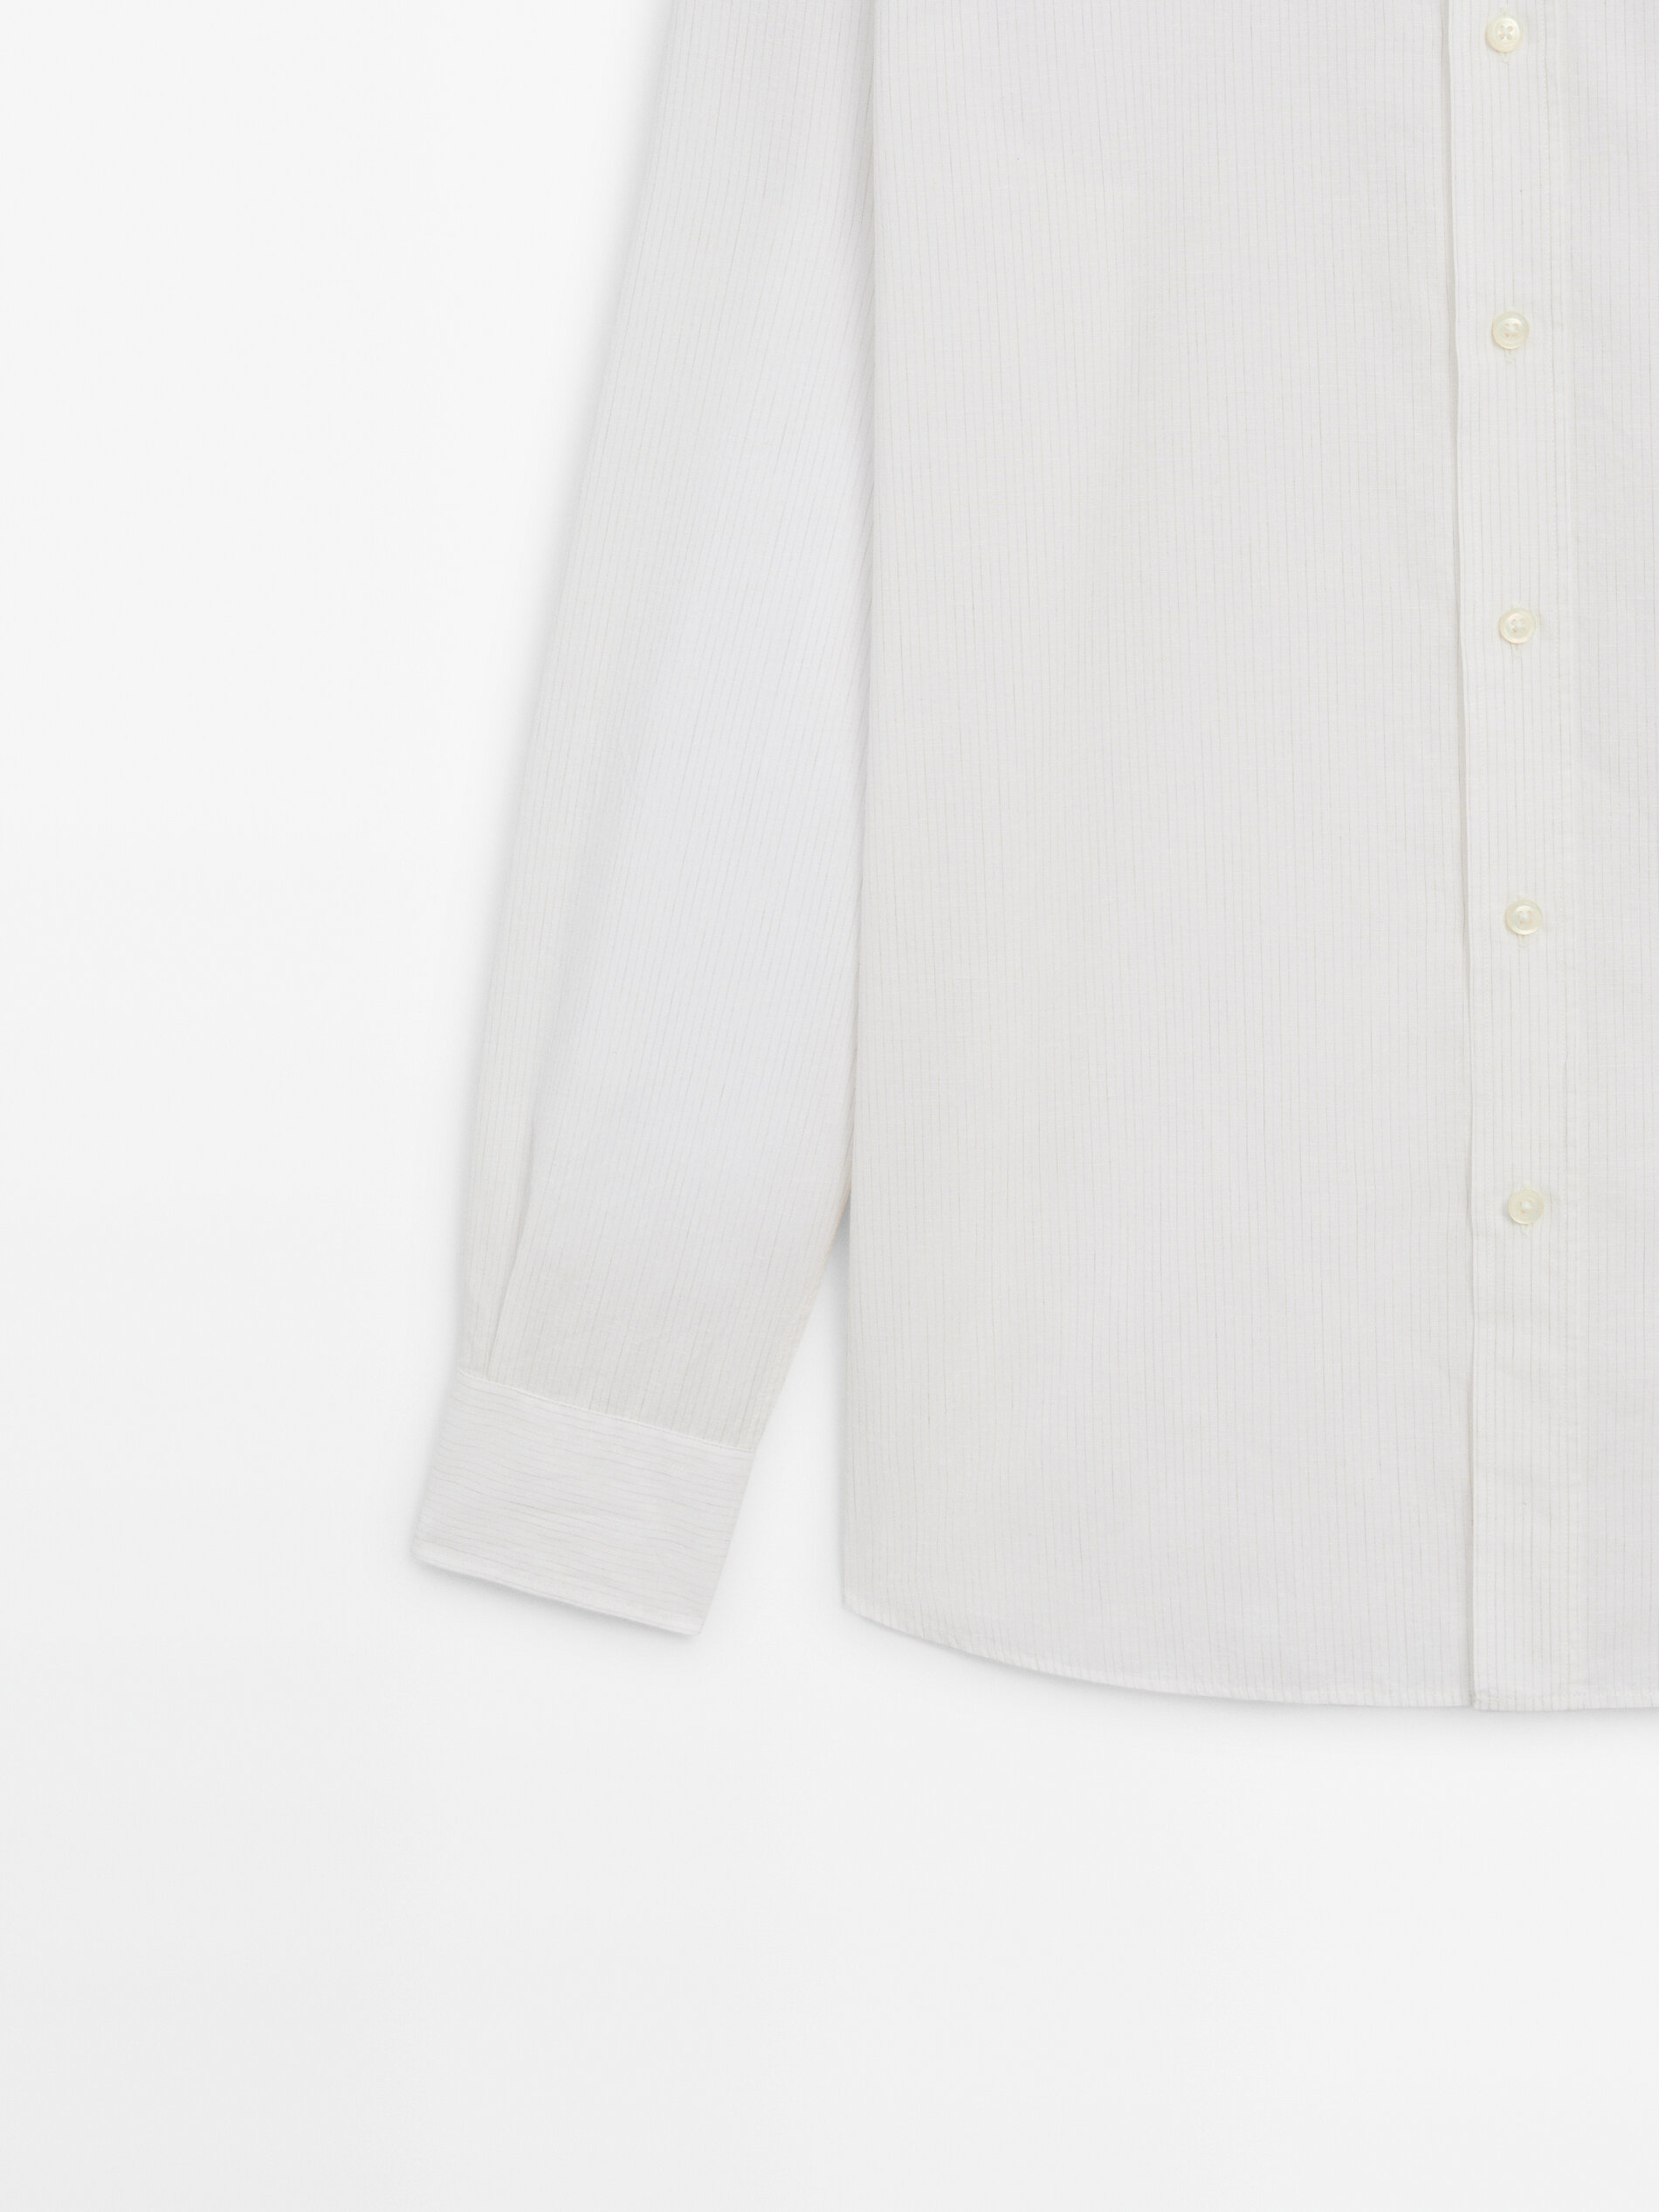 Camisa rayas regular fit con algodón y lino